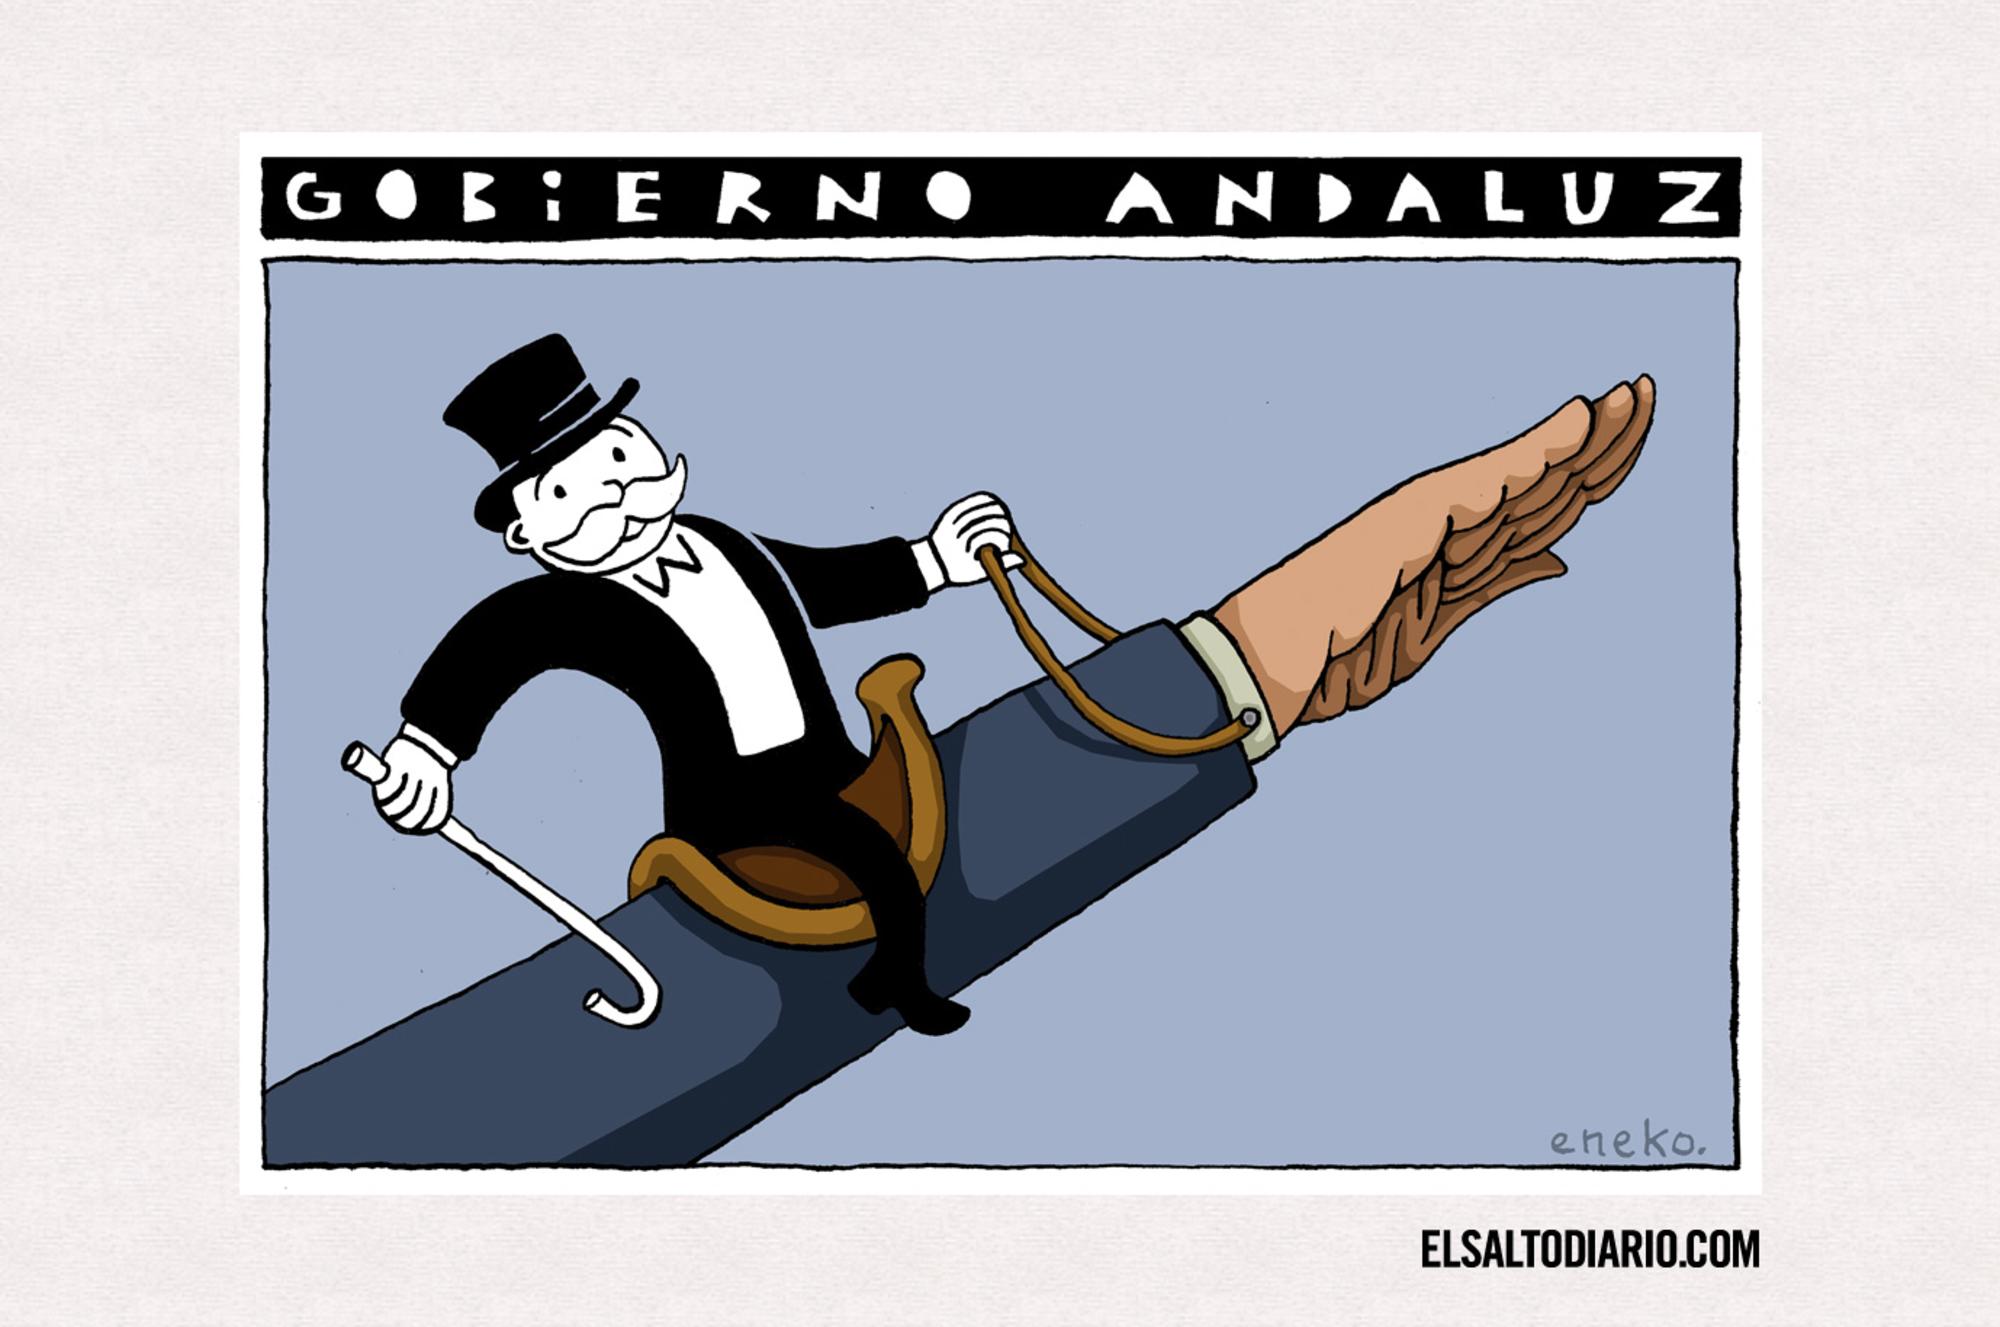 Nuevo gobierno andaluz, por Eneko